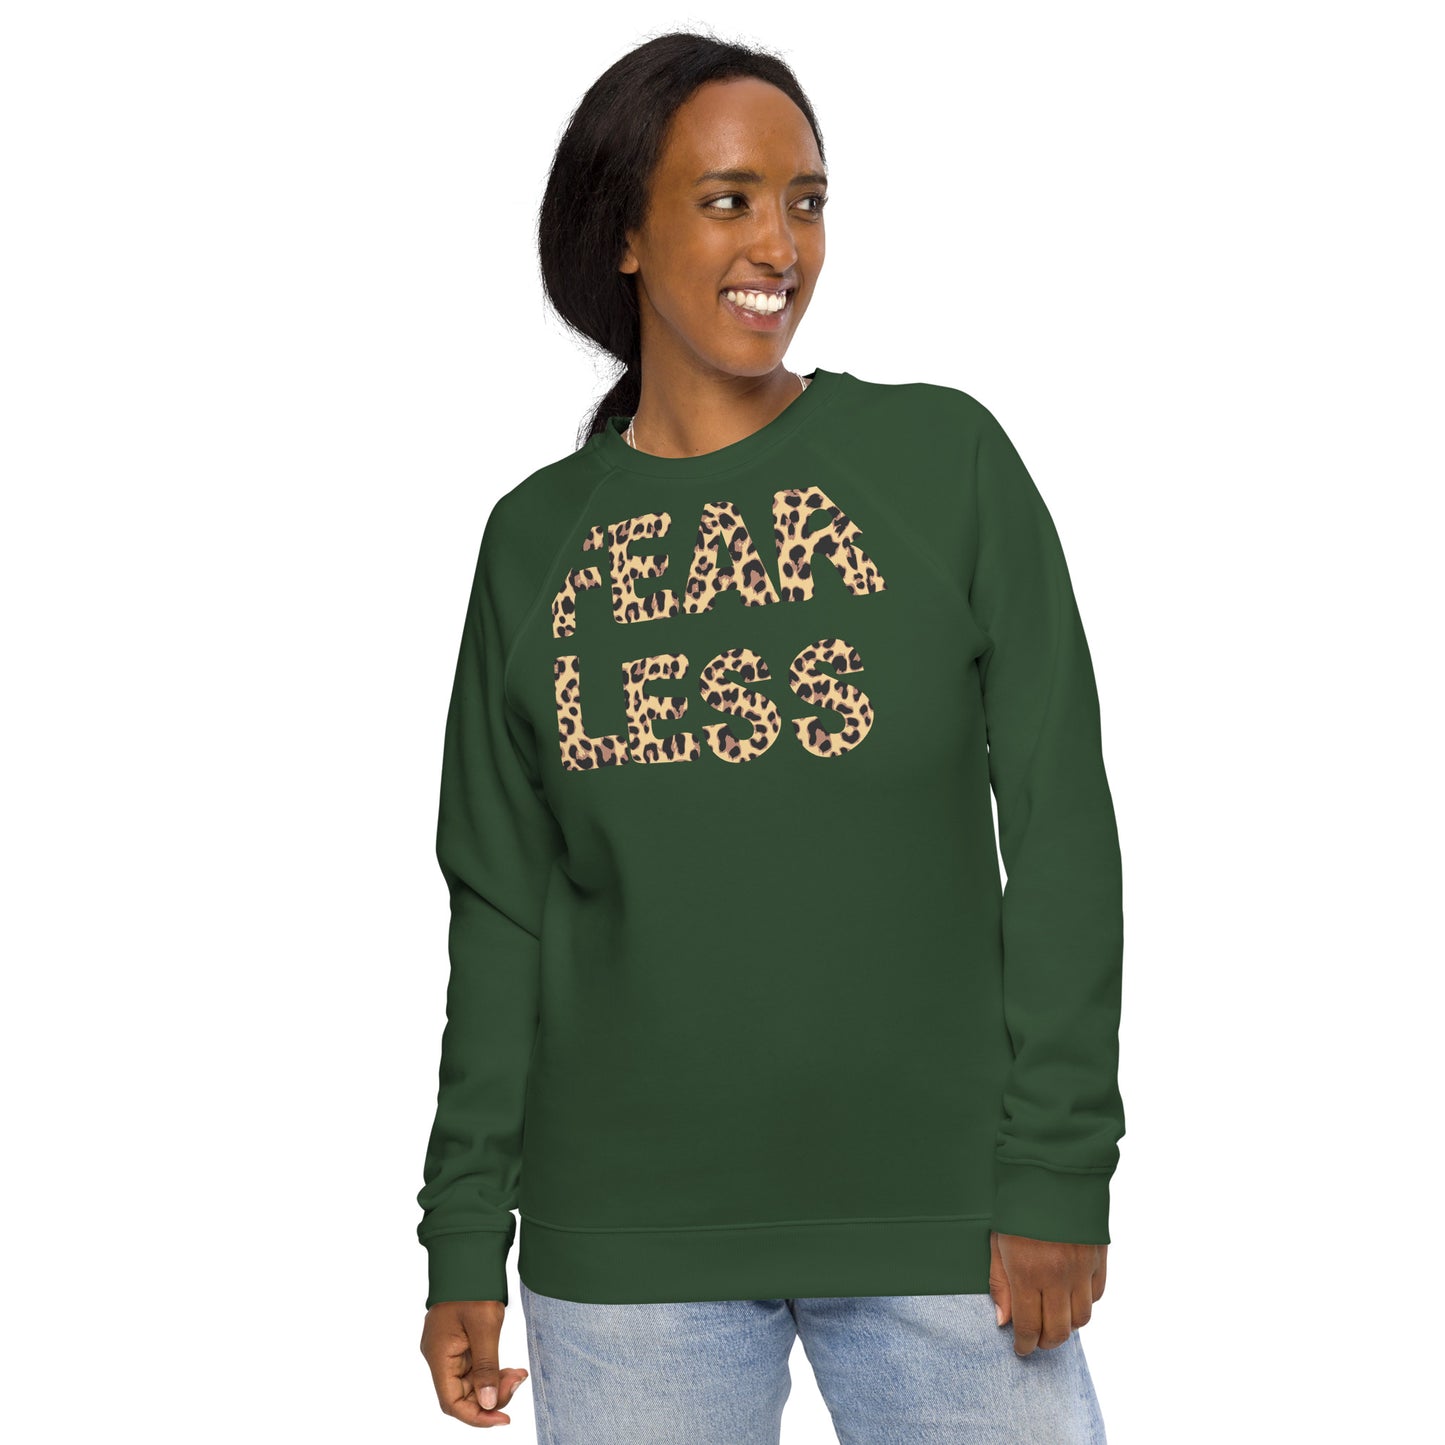 Fearless sweatshirt